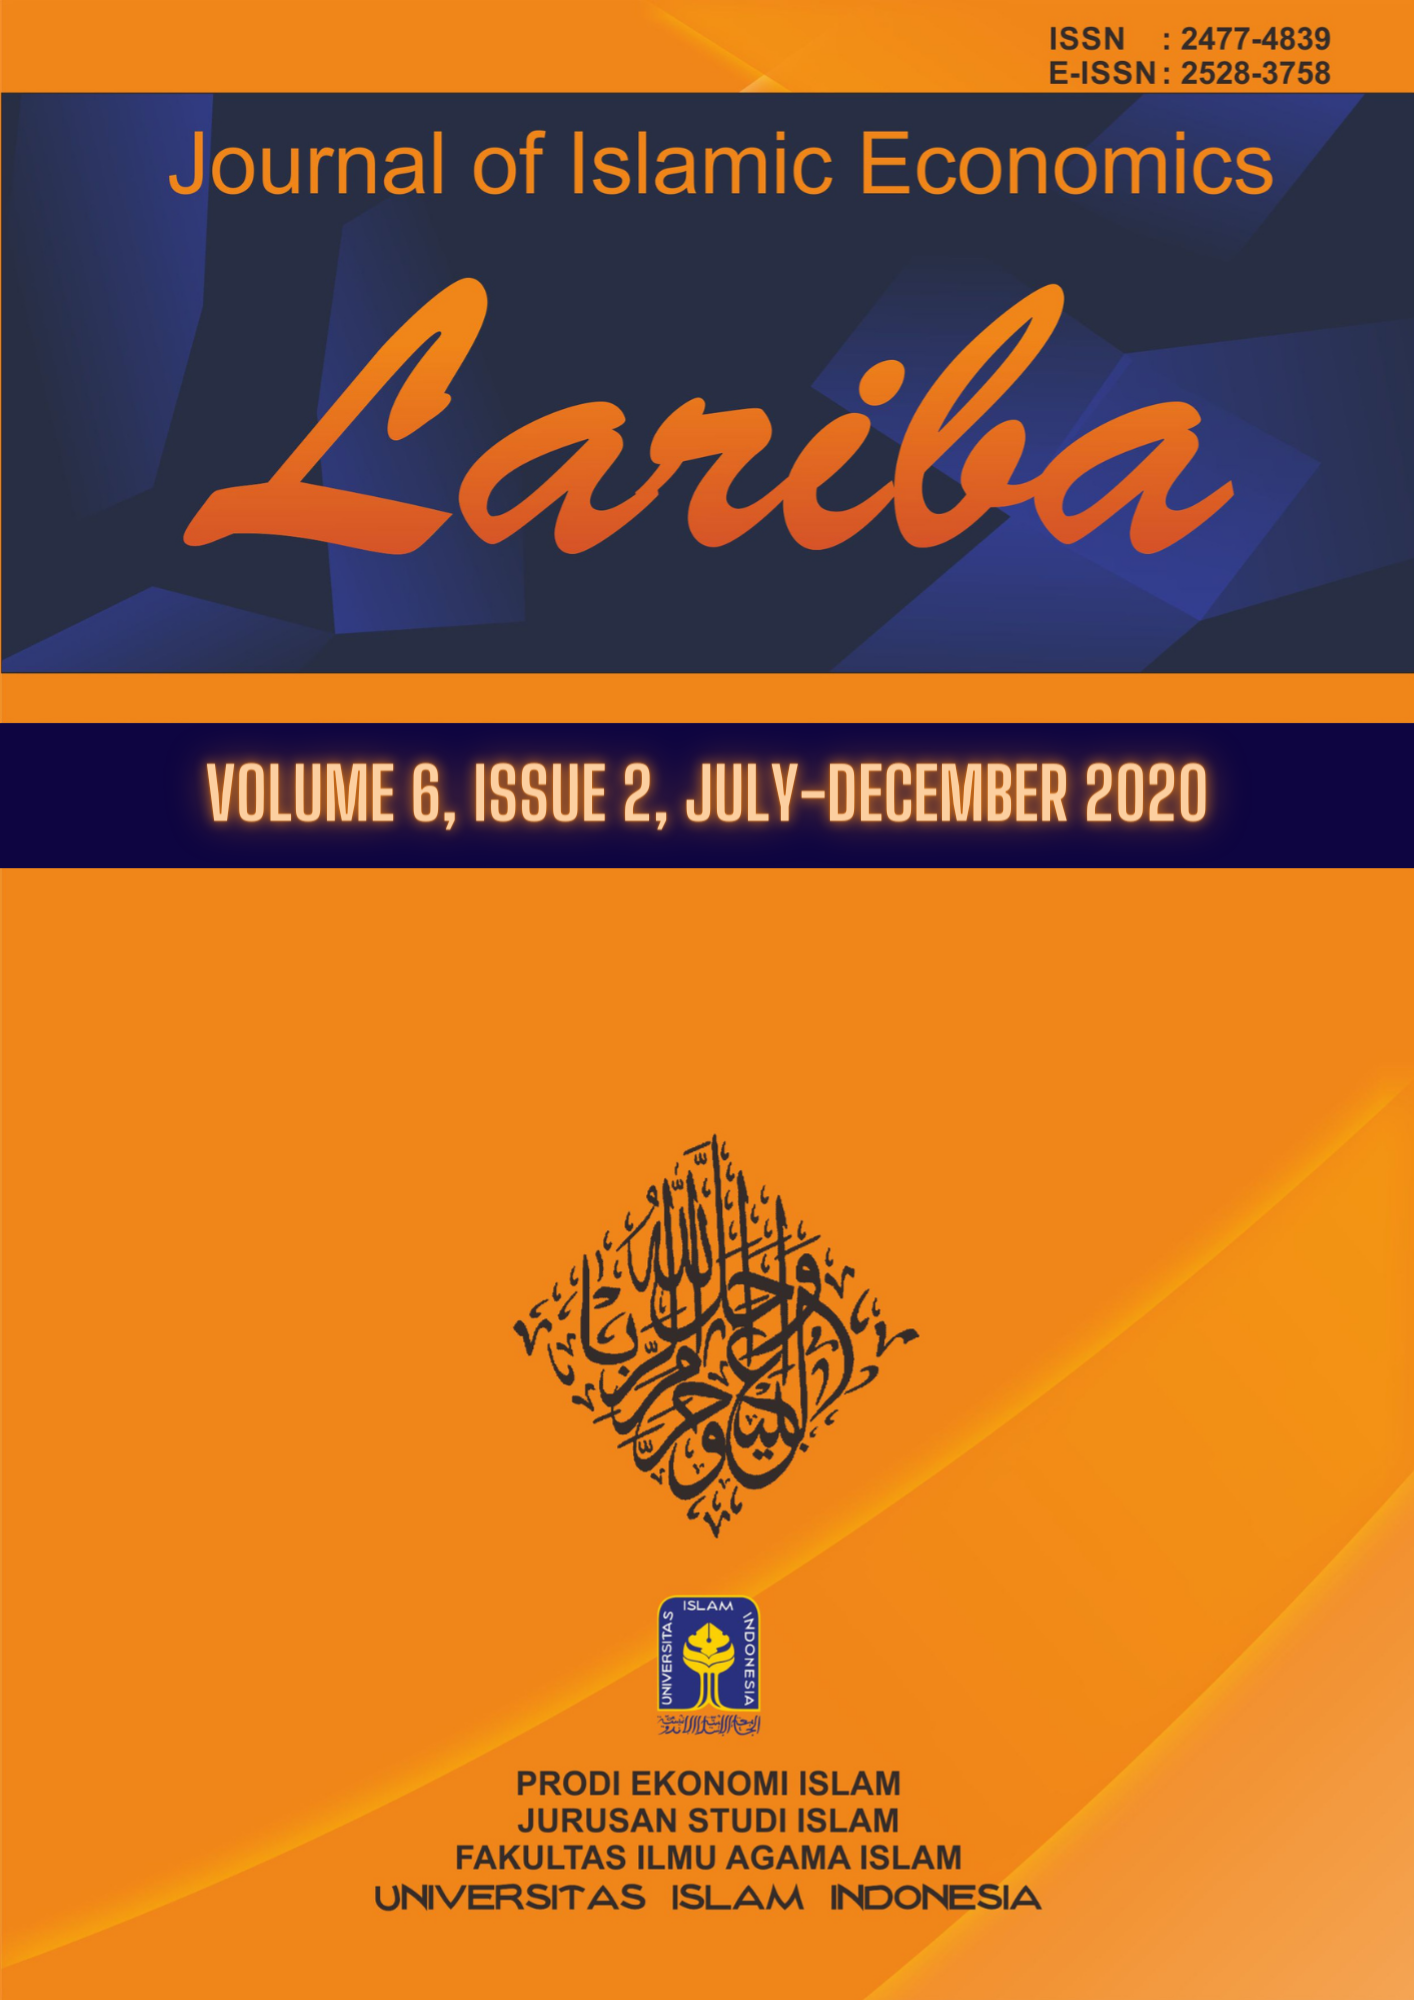 Cover JIELariba Volume 6, Issue 2, July-December 2020